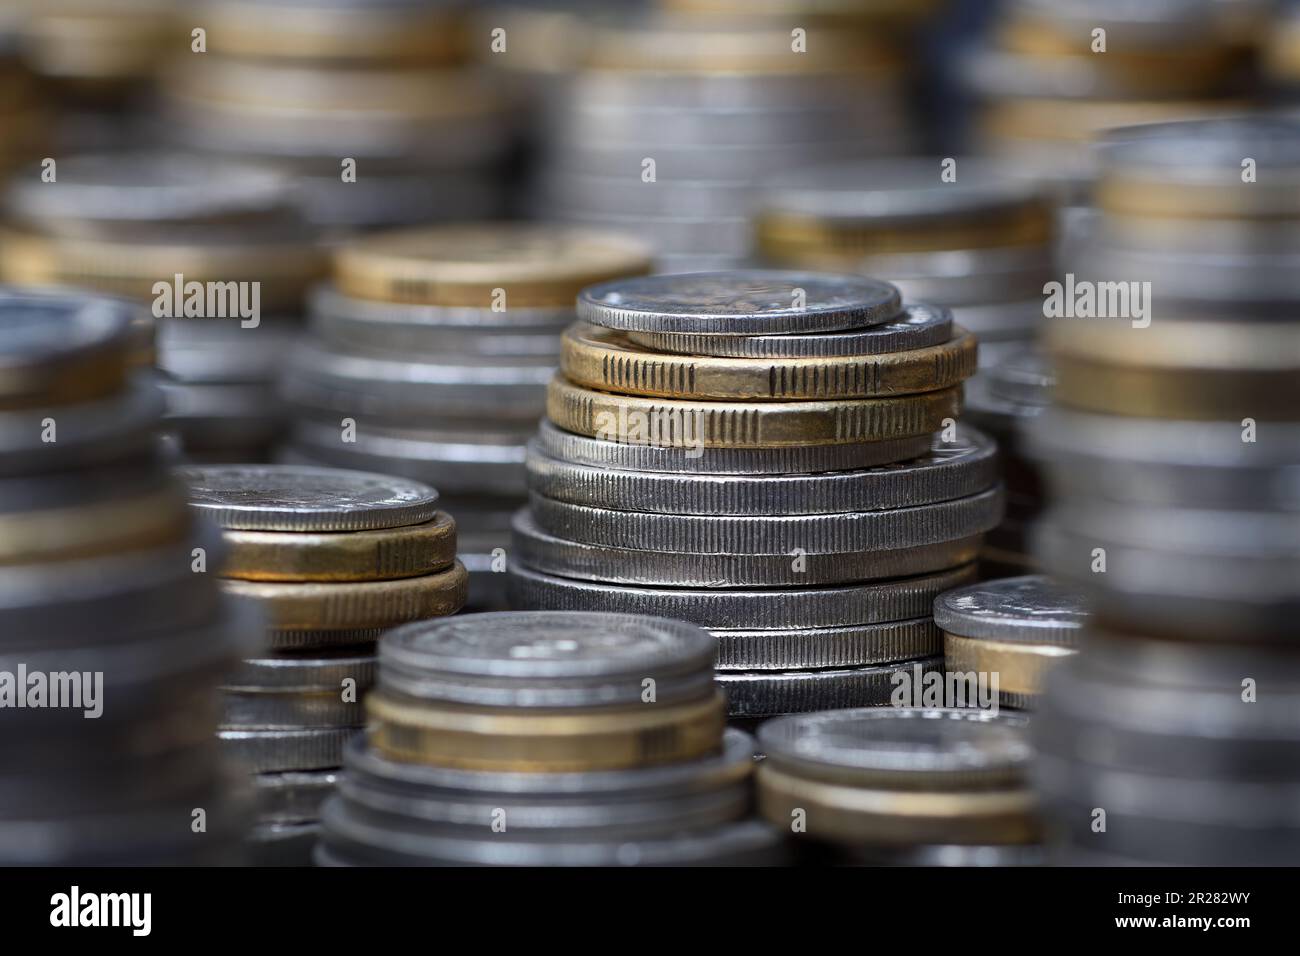 Ein Stapel gestapelter australischer Münzen für zwei und ein Dollar, fünfzig, zwanzig, zehn und fünf Cent füllt den Rahmen mit einem flachen Fokus bei sanfter Beleuchtung Stockfoto